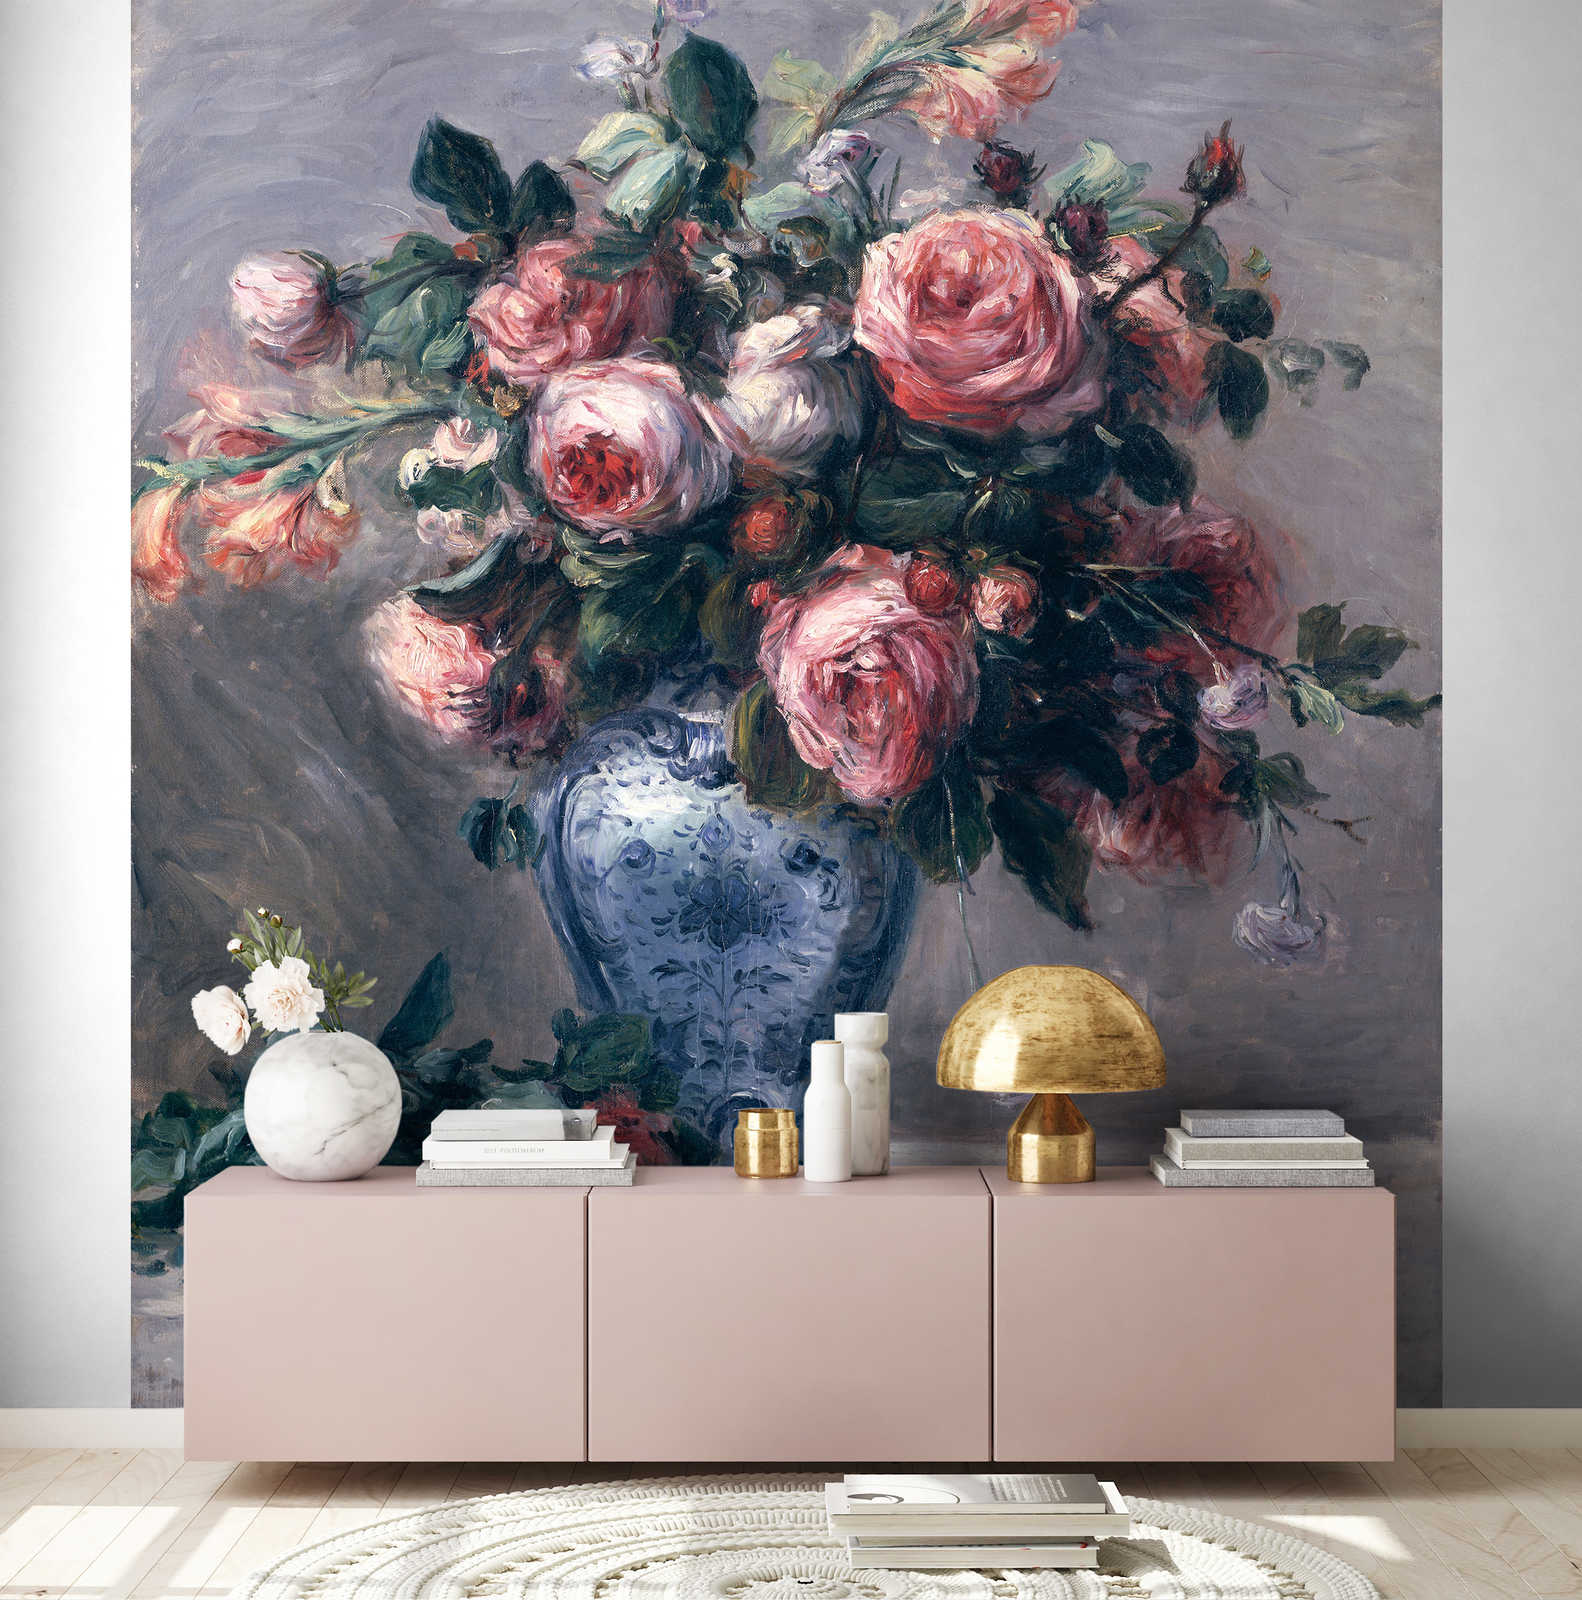             Papier peint panoramique "Rose dans un vase" de Pierre Auguste Renoir
        